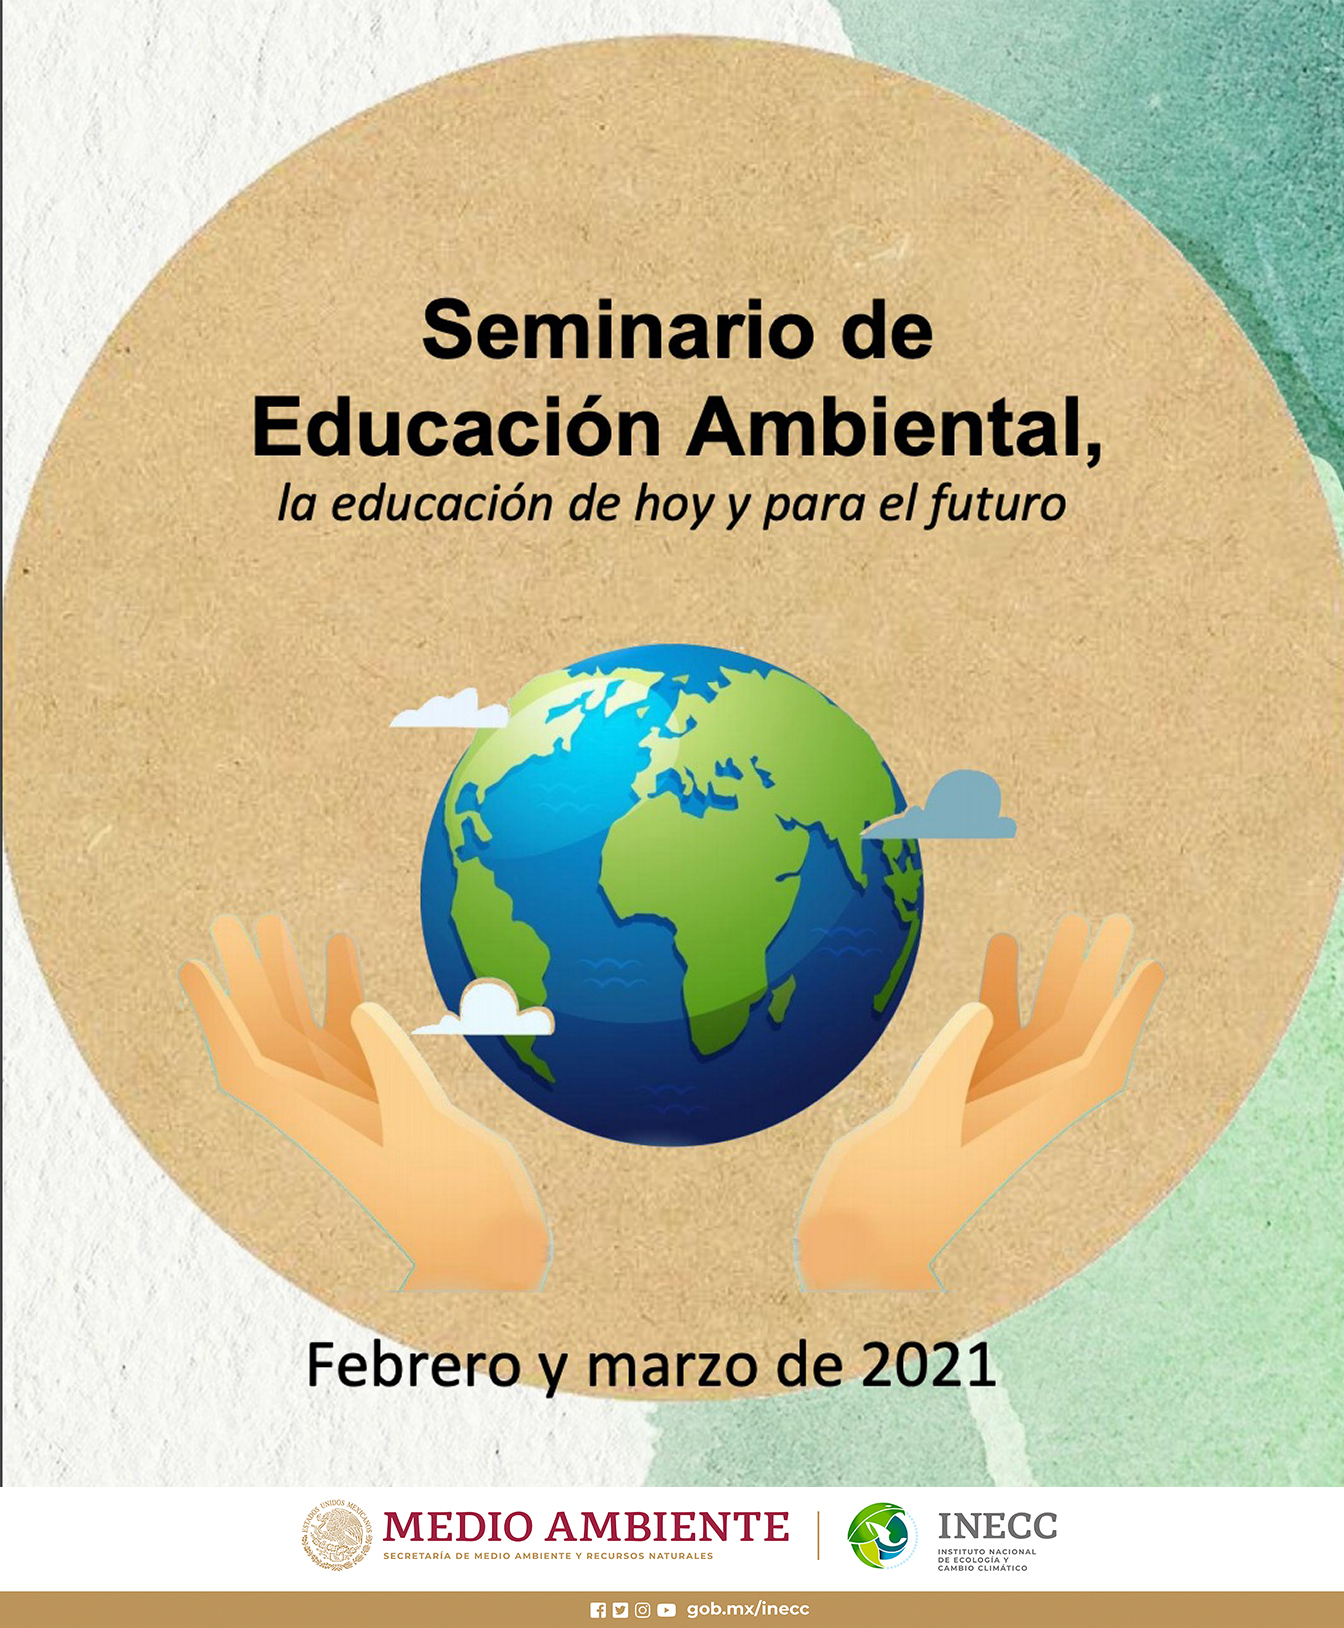 Seminario de Educación Ambiental "La educación de hoy y para el futuro" 